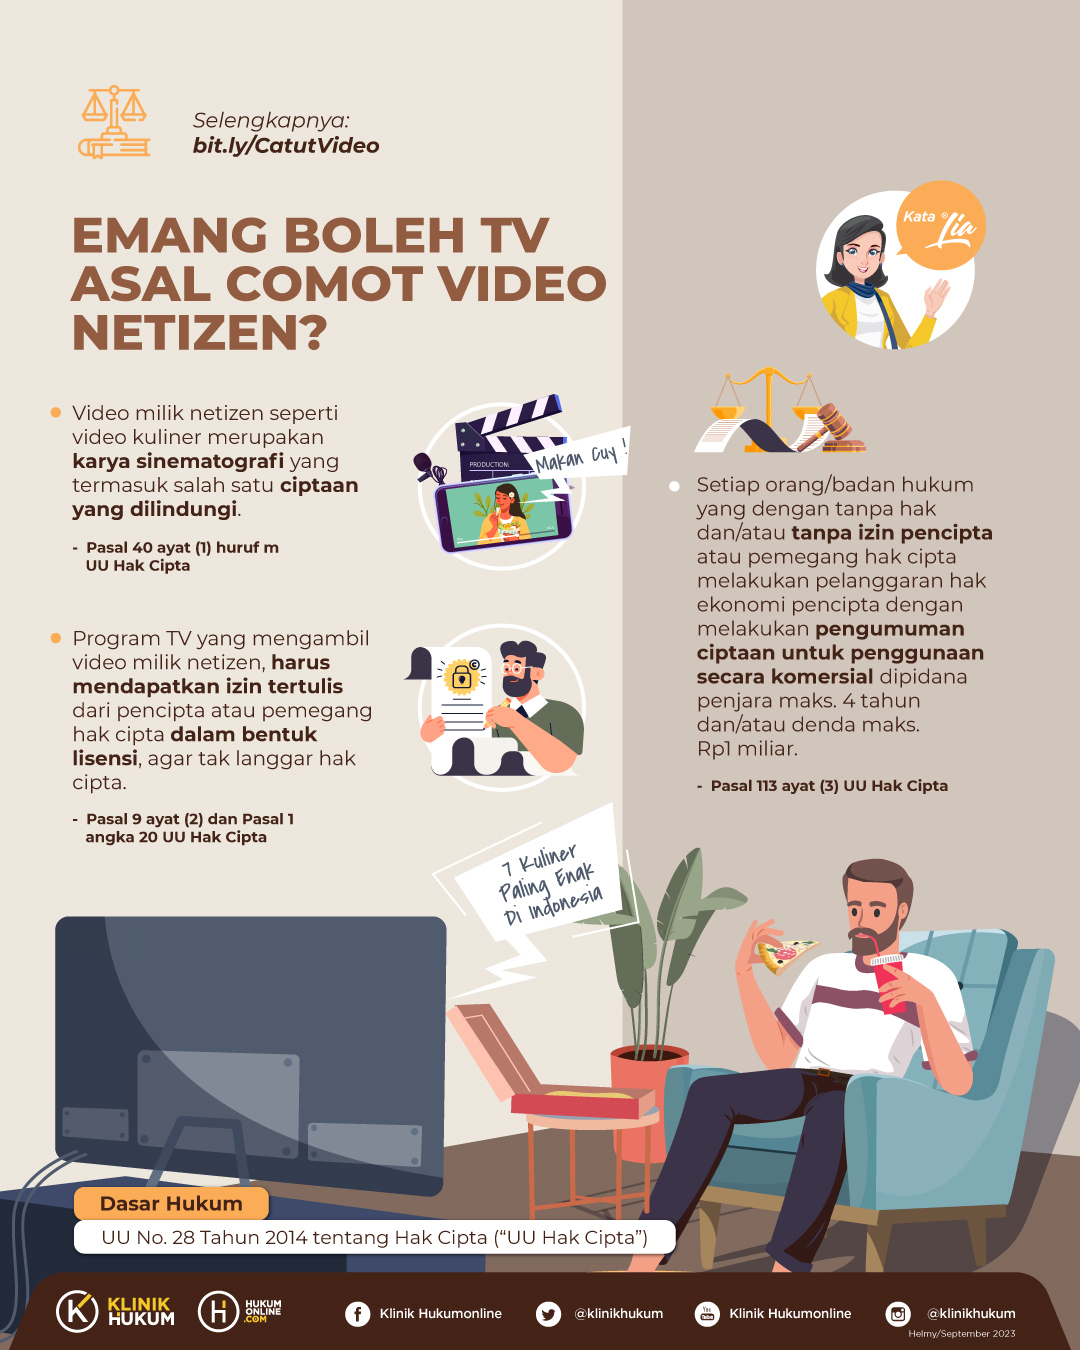 Emang Boleh TV Asal Comot Video Netizen?